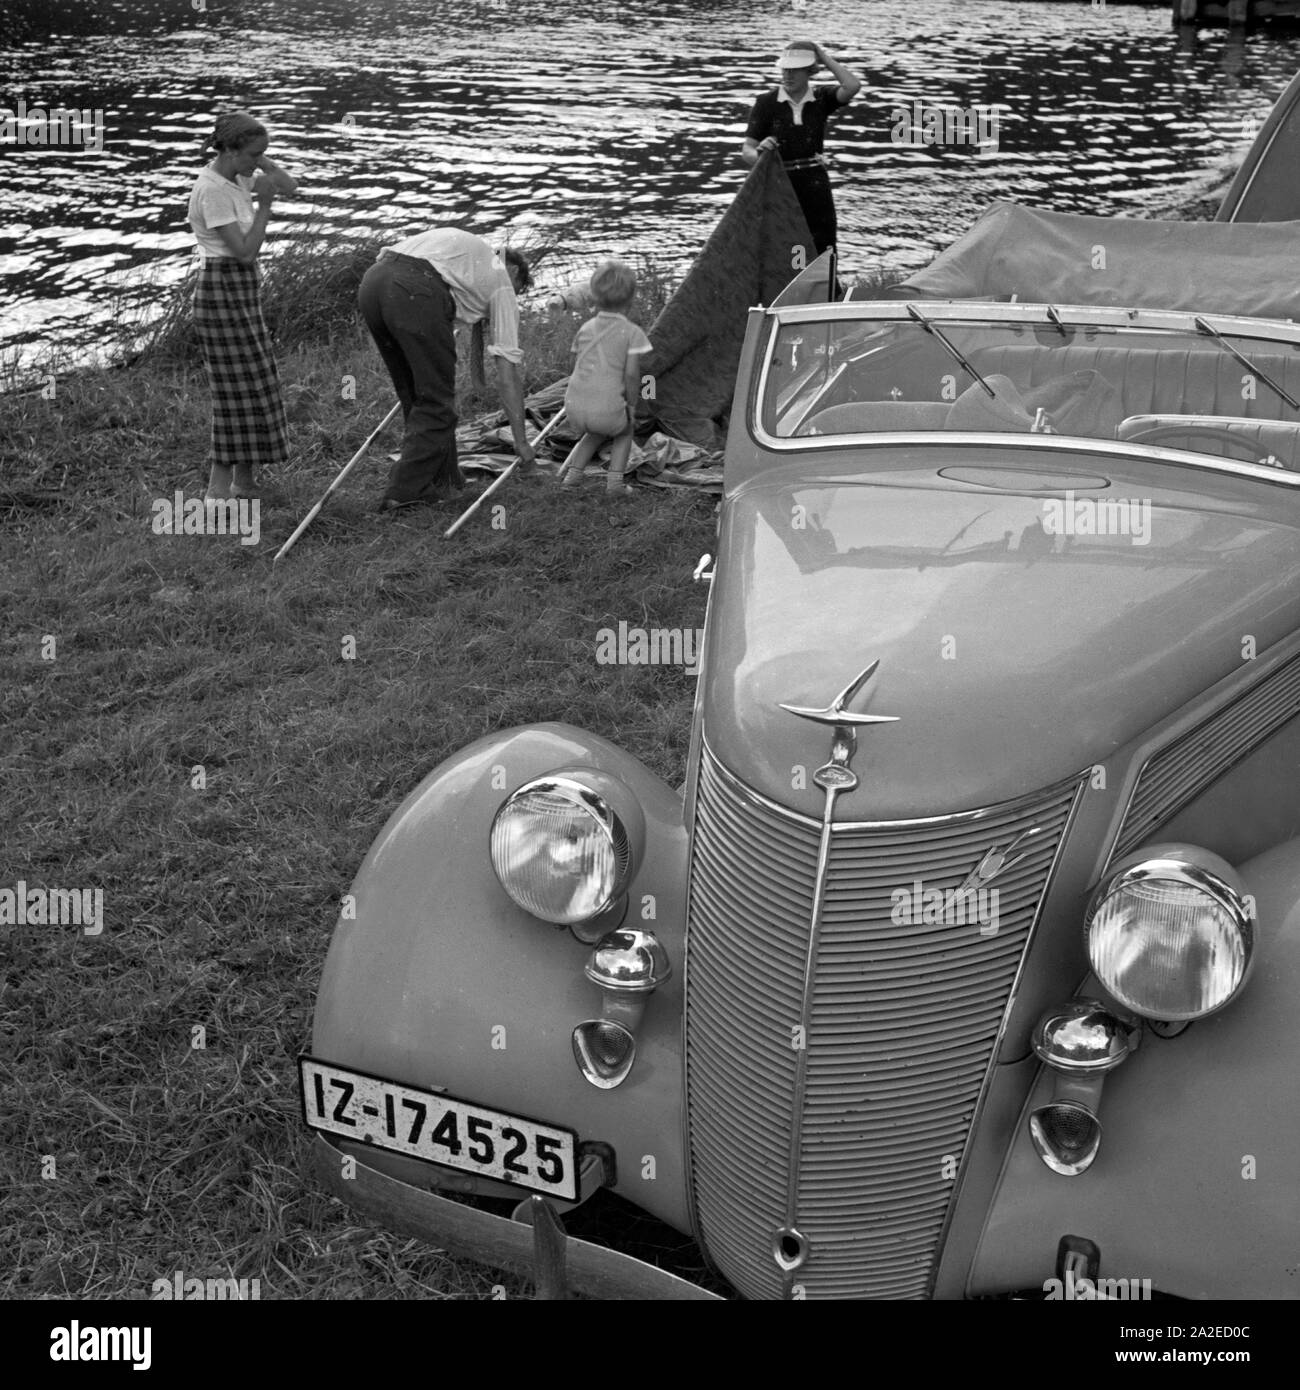 Eine Familie baut ein Zelt auf neben einem Ford V8 Cabrio, am Ufer eines Sees, Deutschland 1930er Jahre. A family bringing up a tent beside their Ford V8 convertible at the shore of a lake, Germany 1930s. Stock Photo